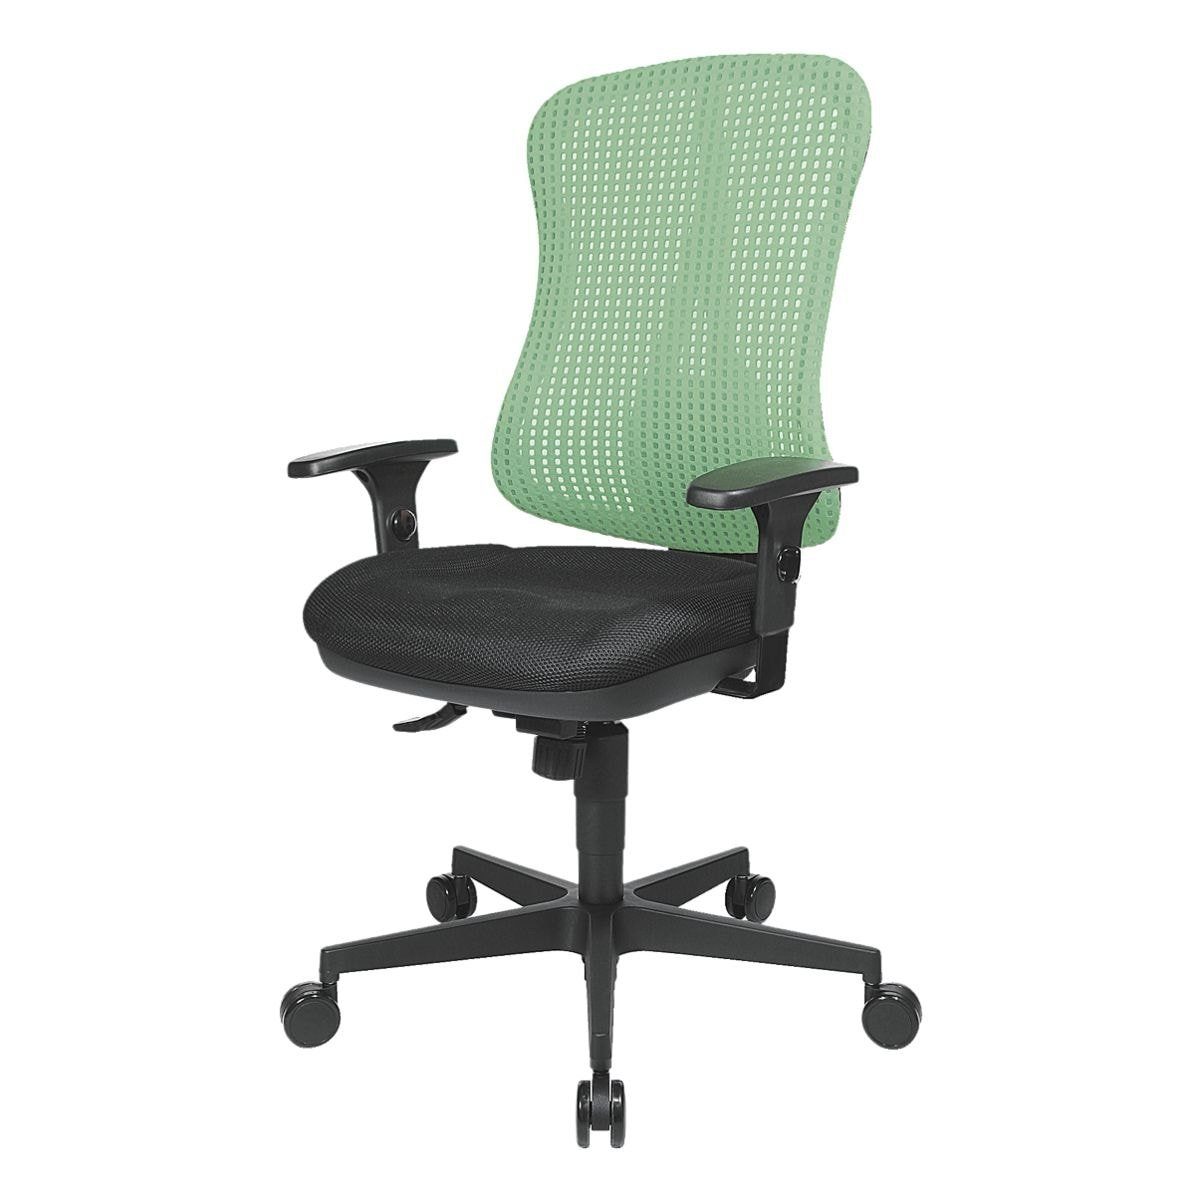 Netzrückenlehne, (ohne Muldensitz, Headpoint Armlehnen) grün Punkt-Synchronmechanik, Schreibtischstuhl TOPSTAR SY,